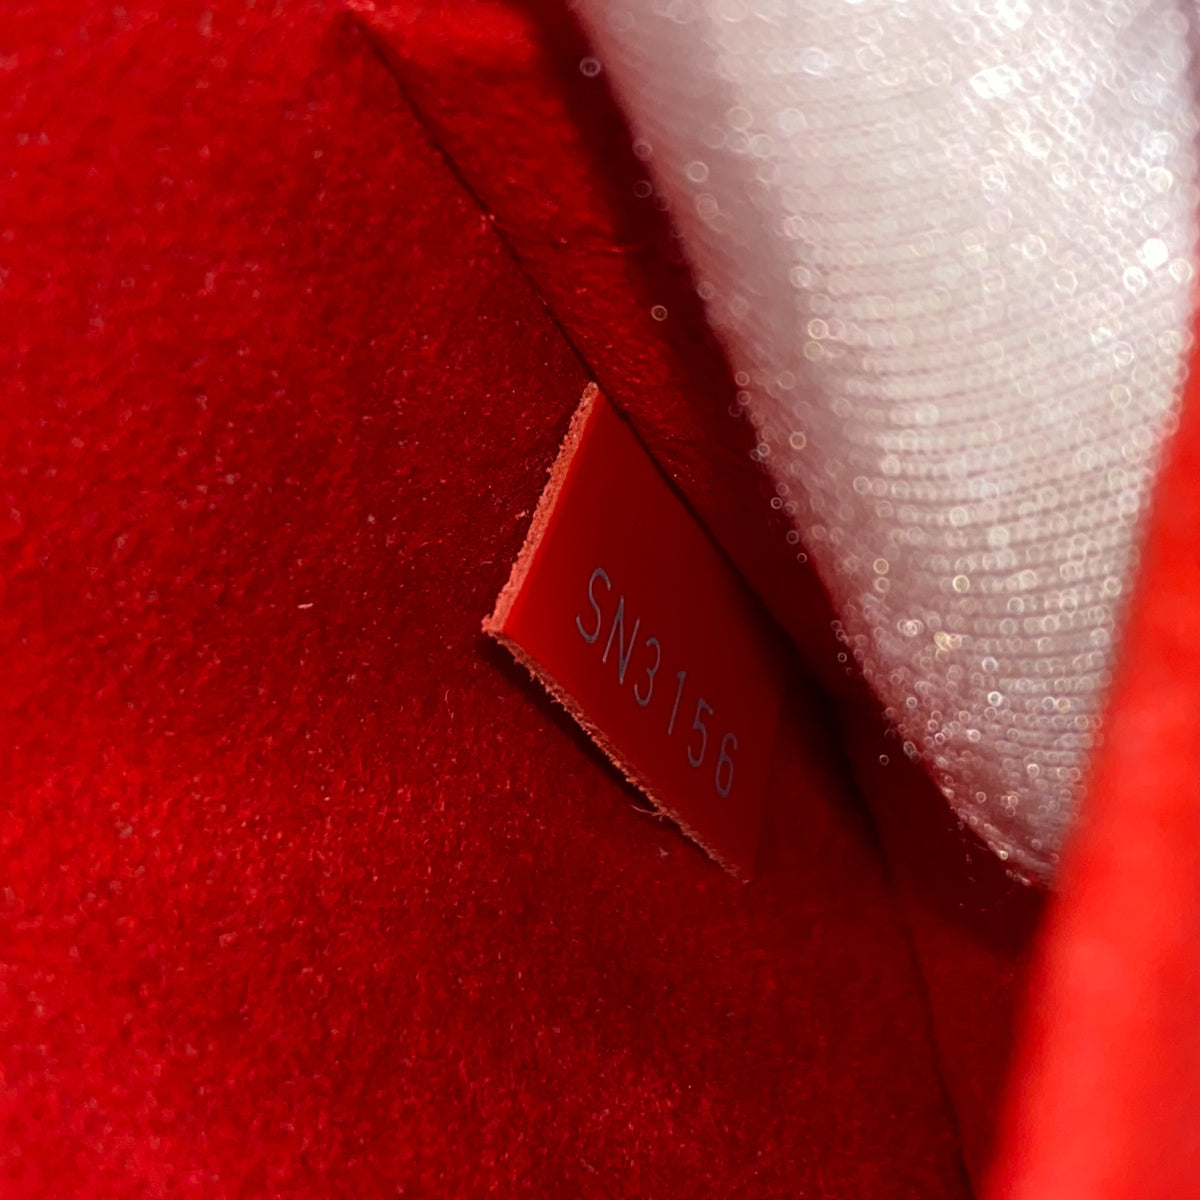 Louis Vuitton Alma BB EPI Red - THE PURSE AFFAIR